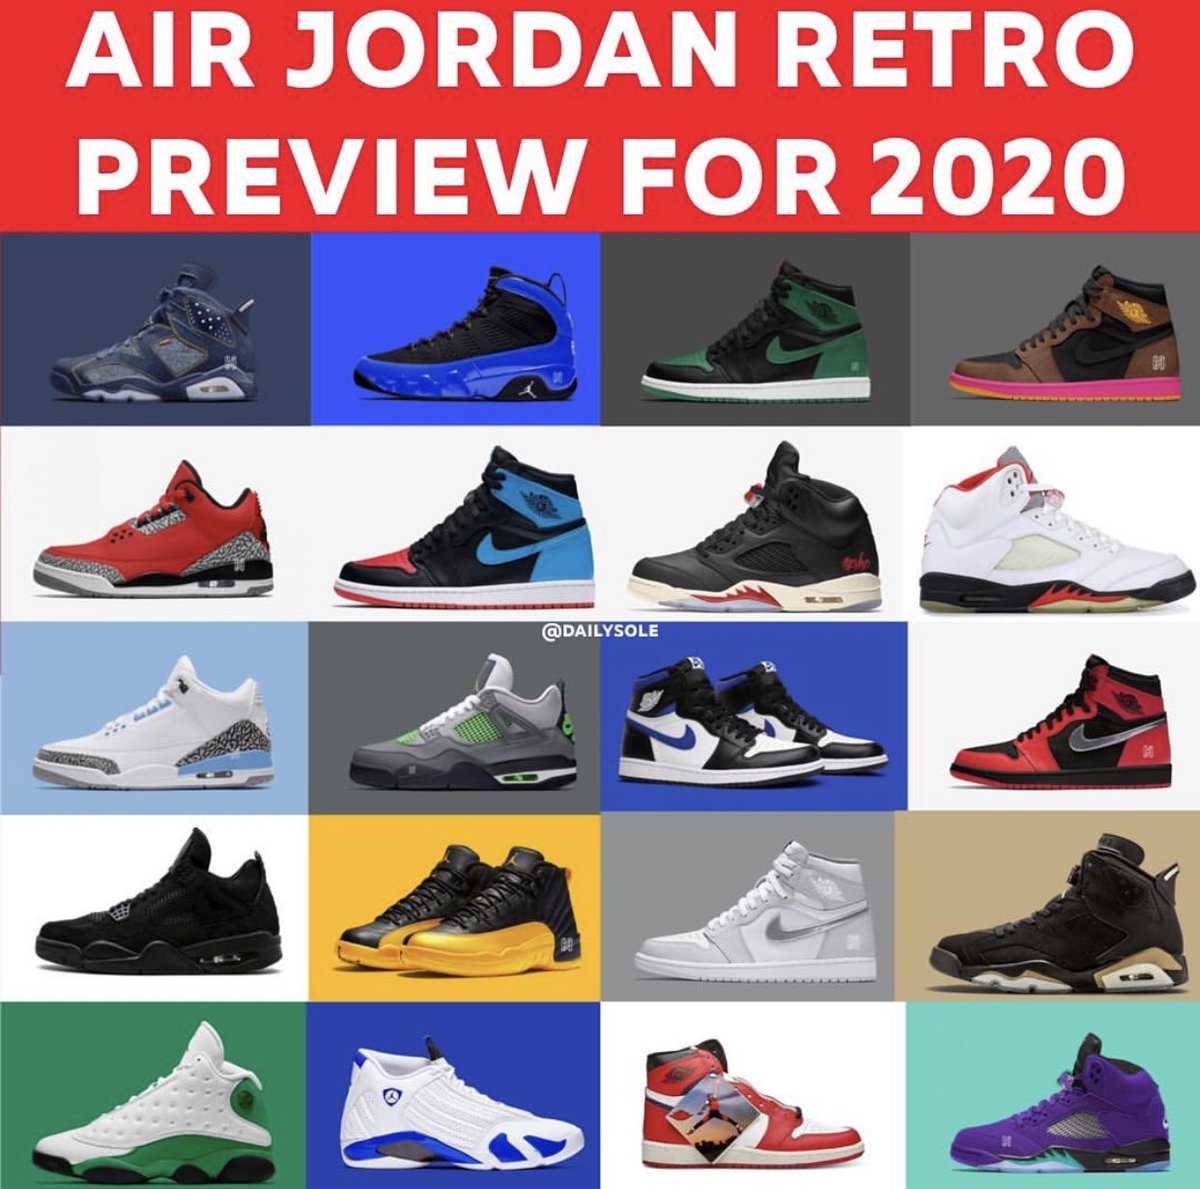 2020 air jordan retro releases